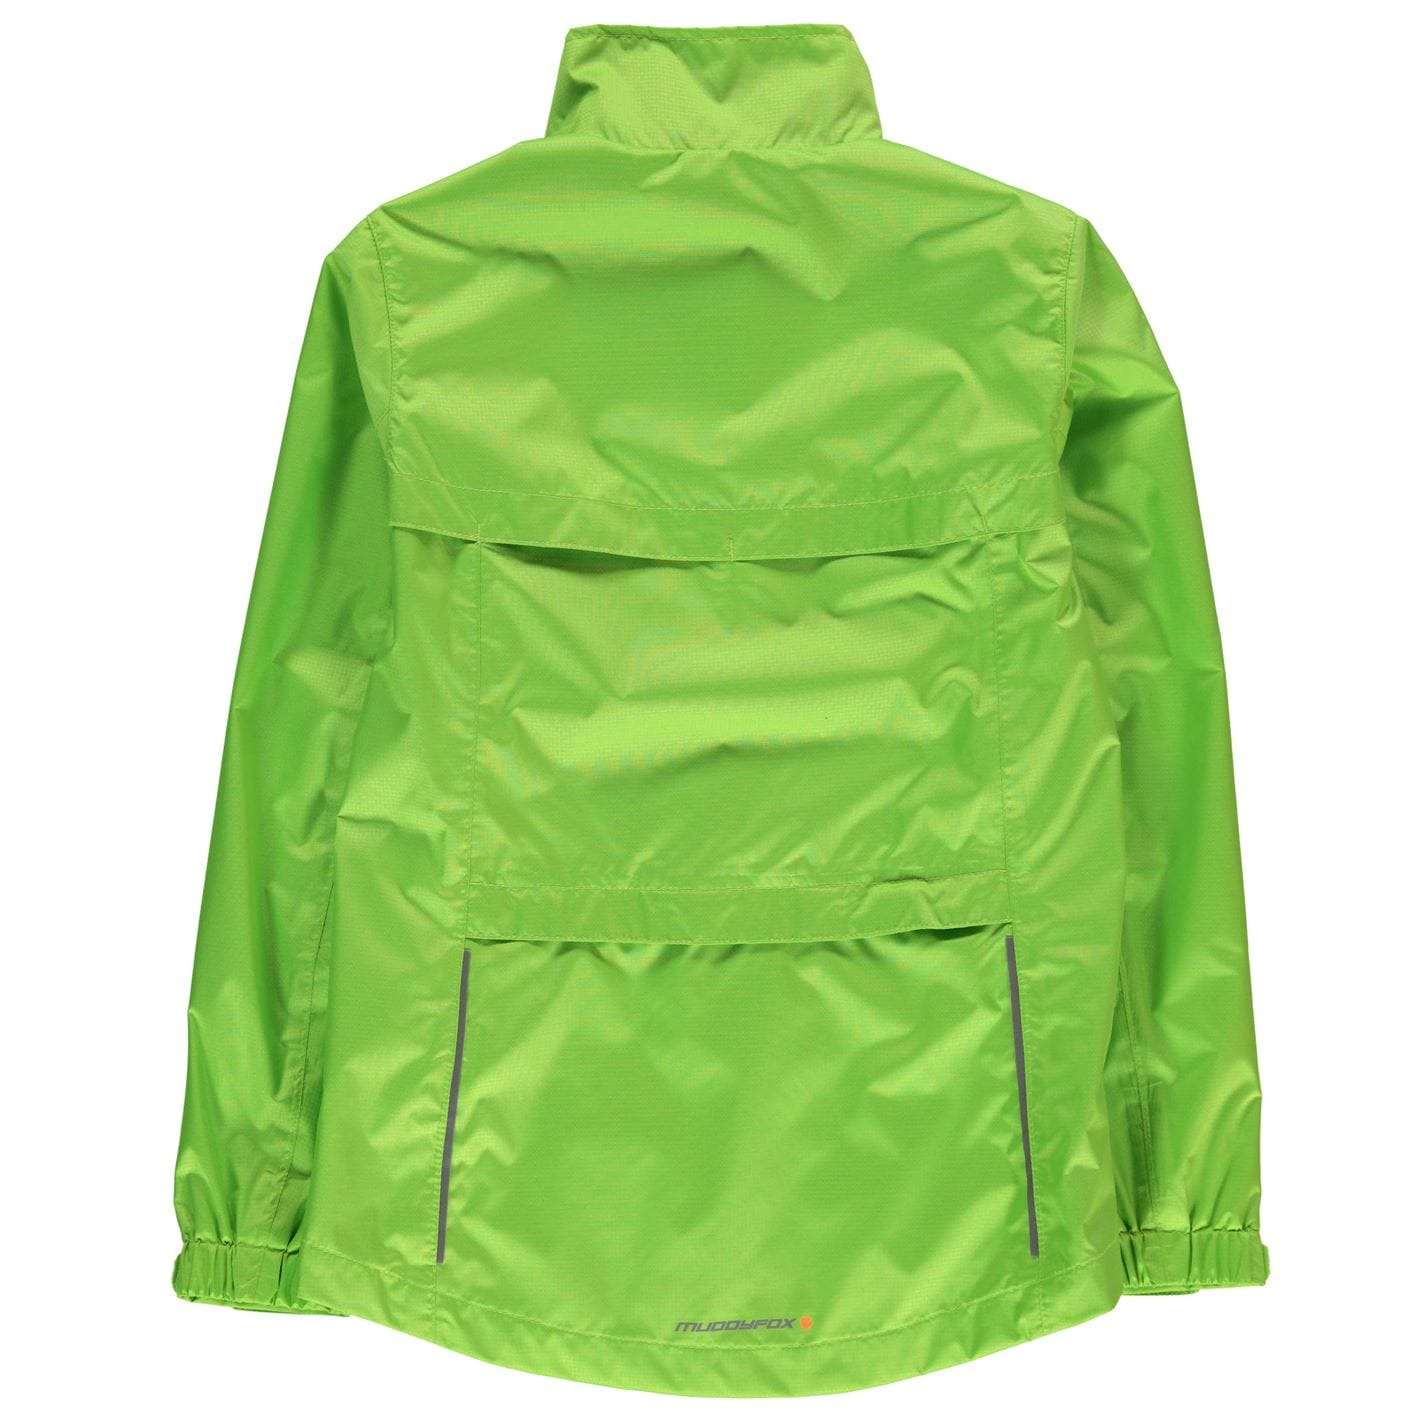 Jacheta Muddyfox Cycle pentru copii fosforescent verde